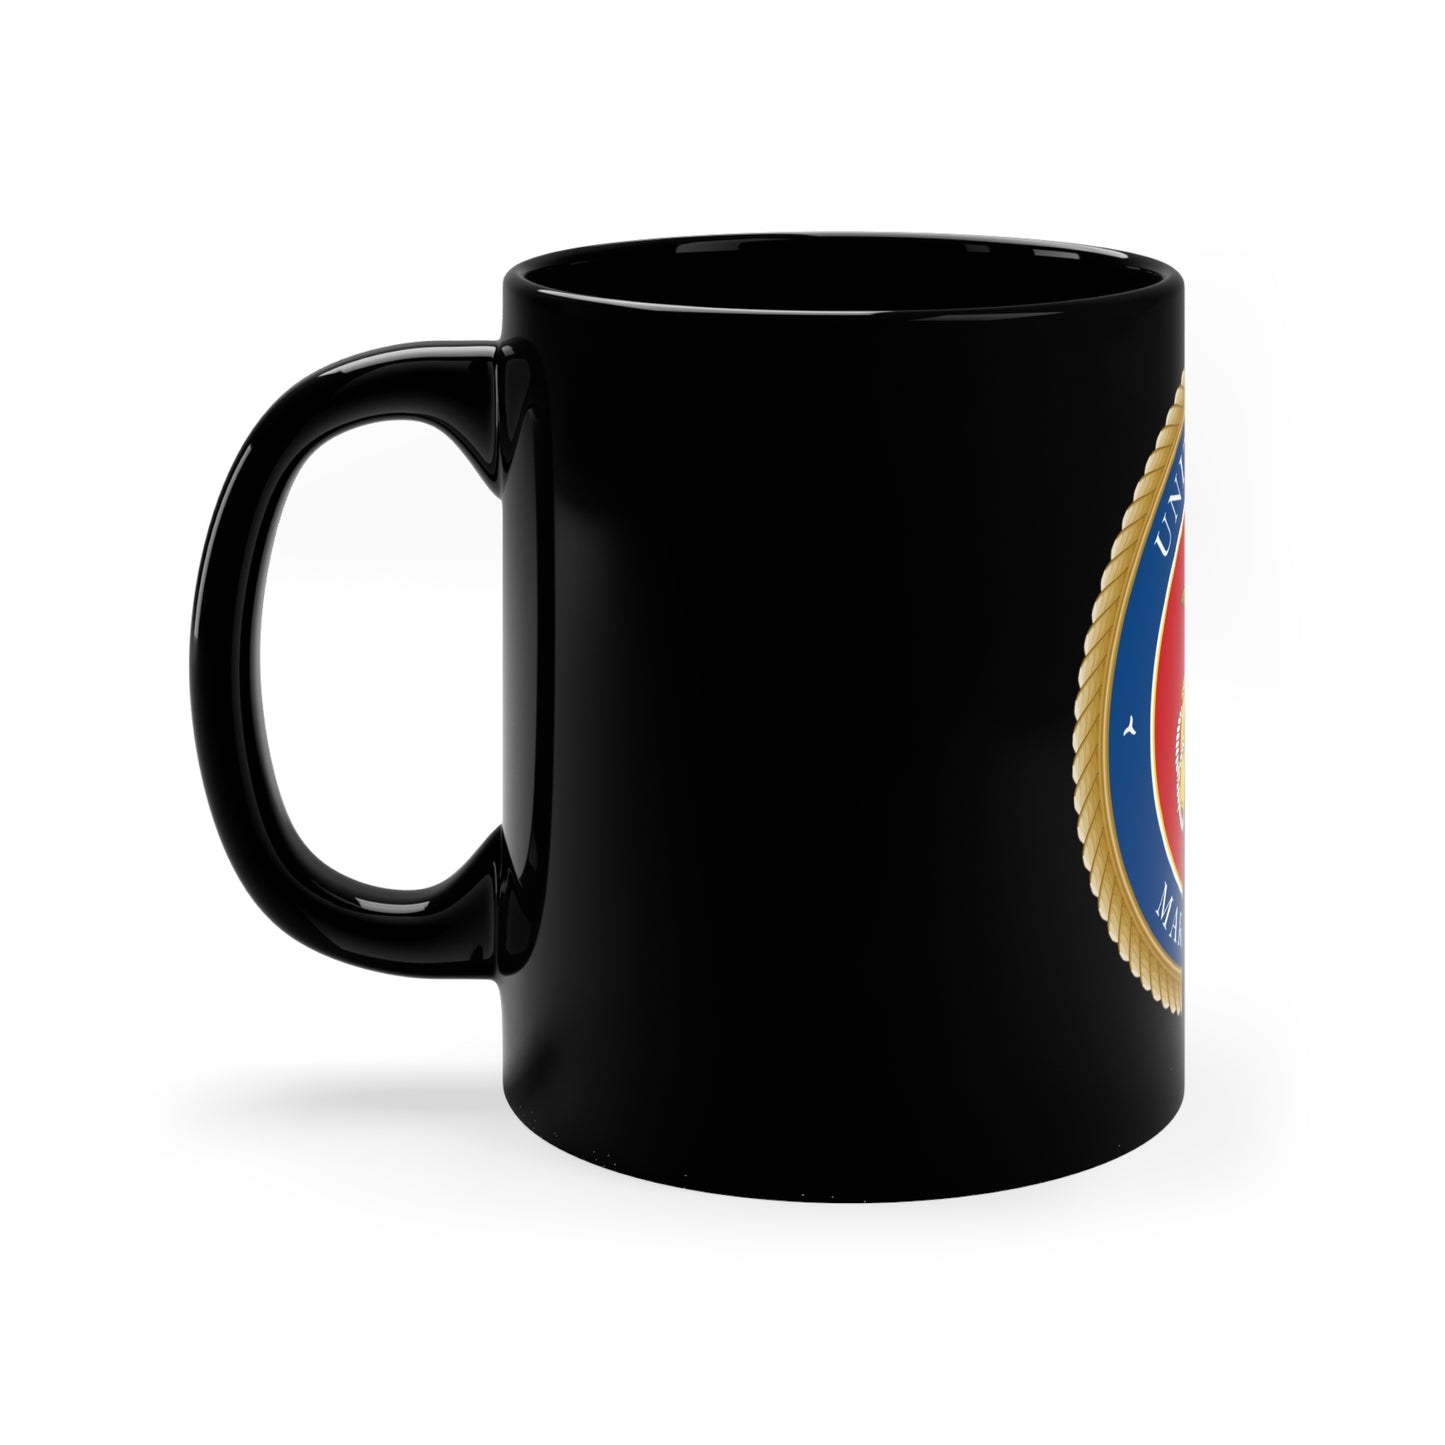 USMC Mug